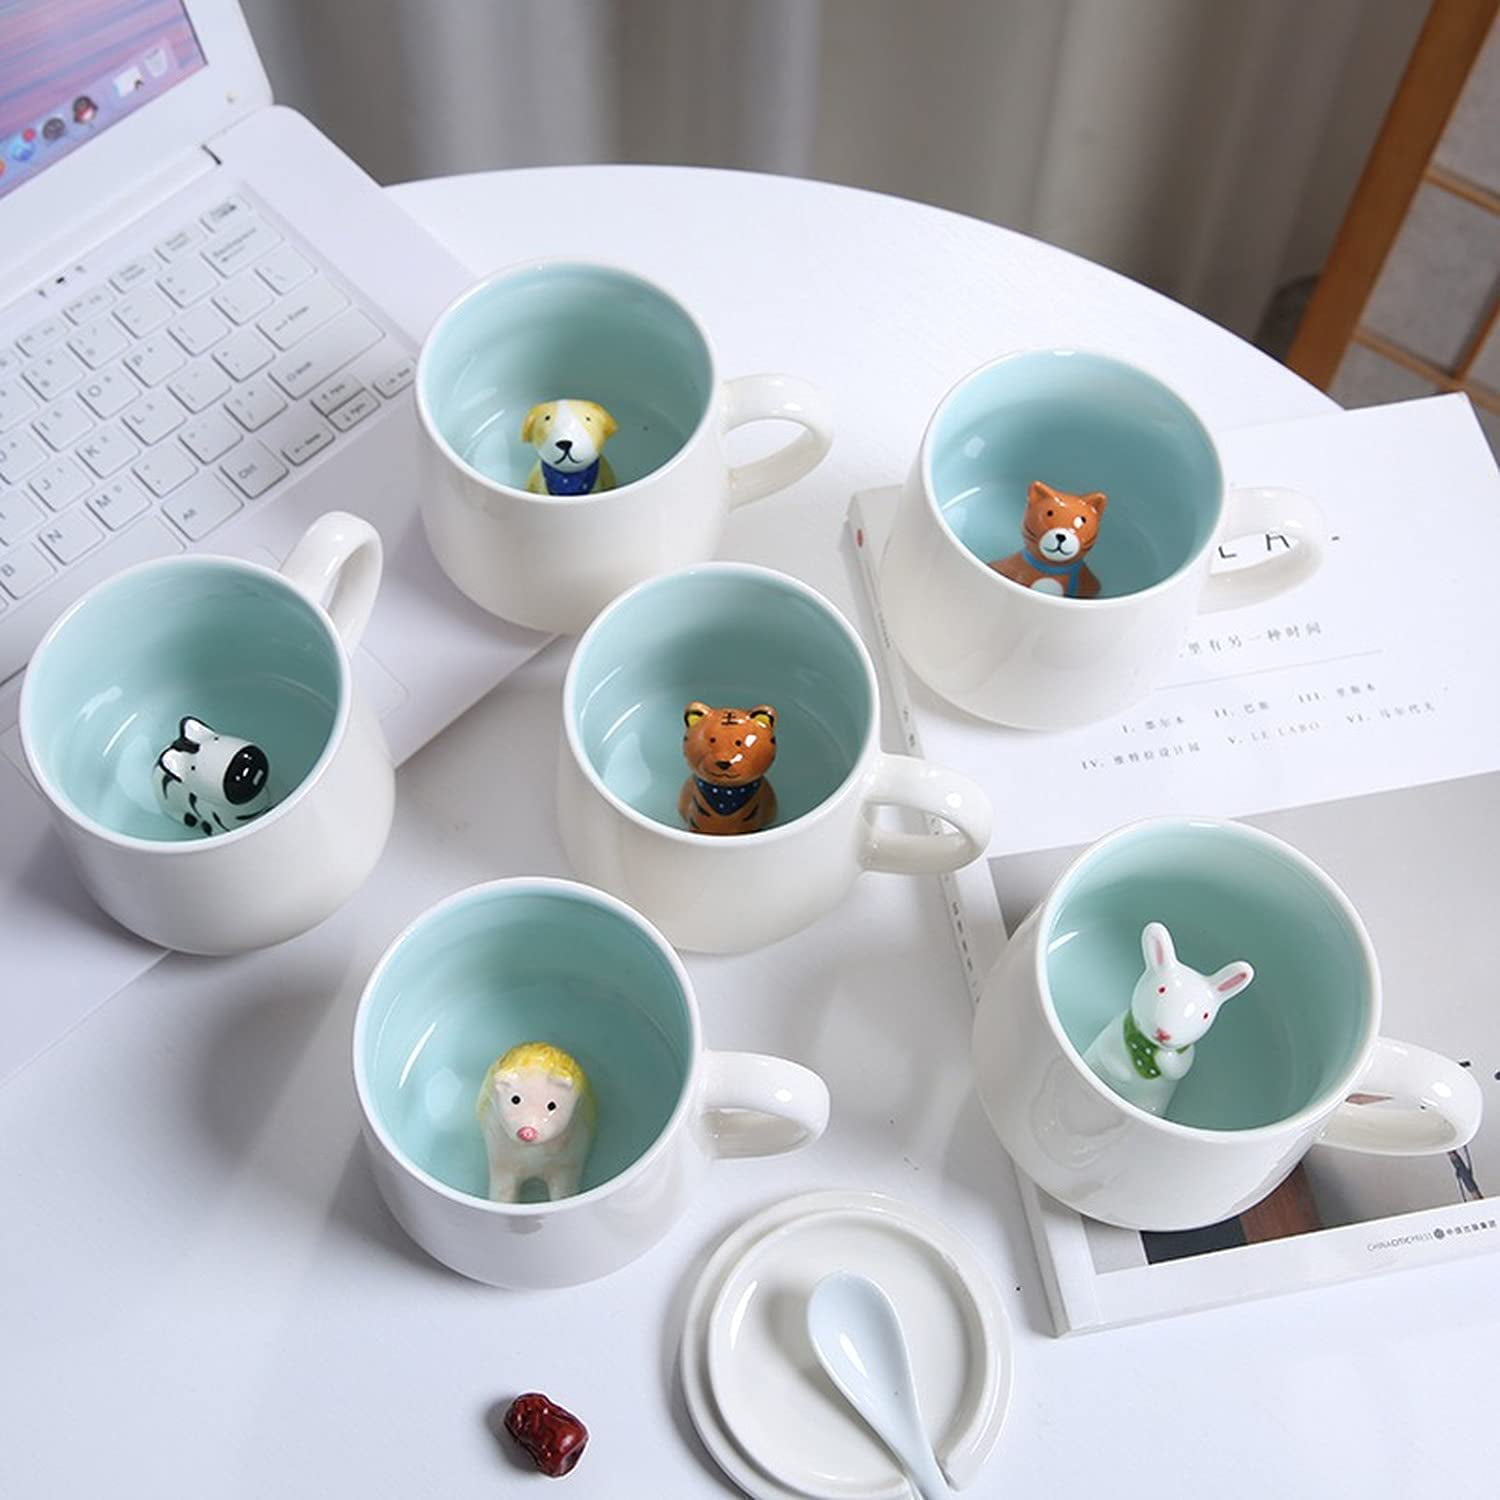 Frog Inside Coffee Mug Porcelain Figurine Mug 3D Ceramic Mugs - 13 oz